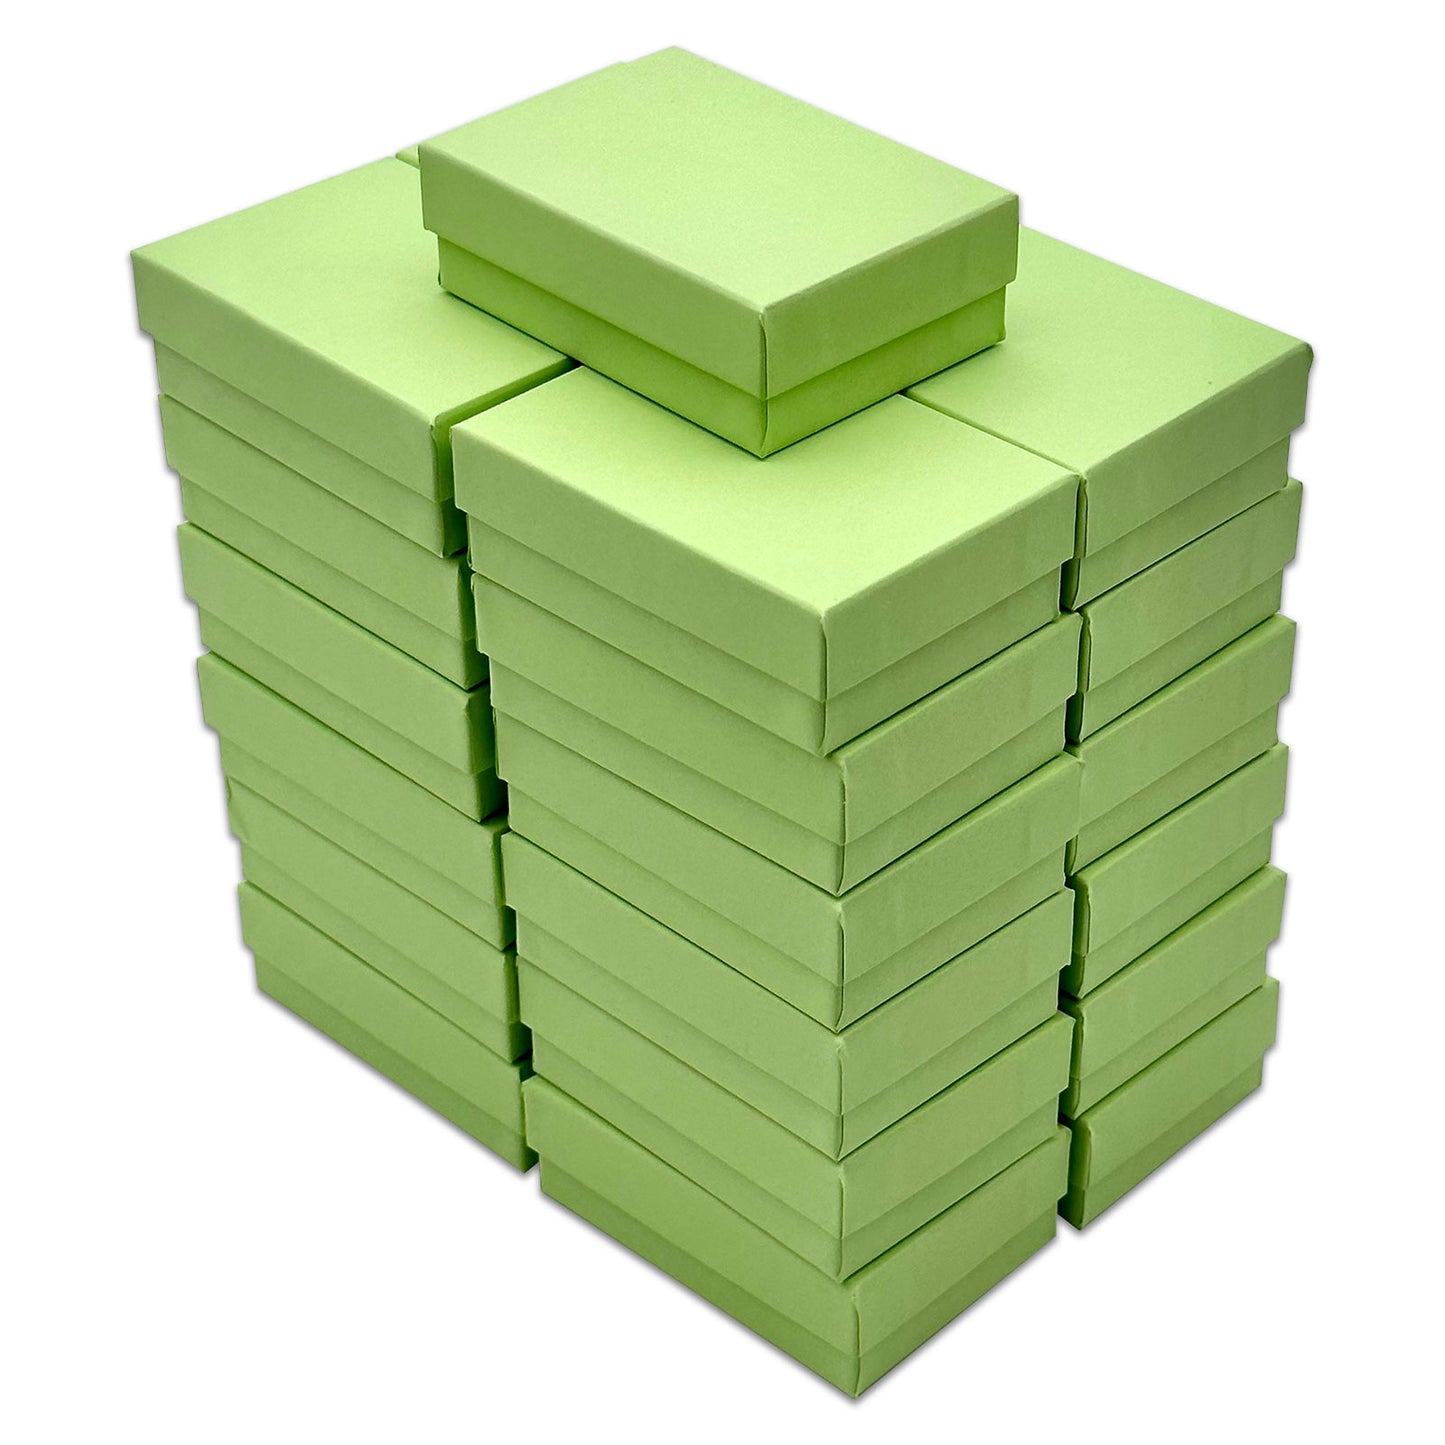 3 1/4" x 2 1/4" x 1" Mint Green Cotton Filled Paper Box